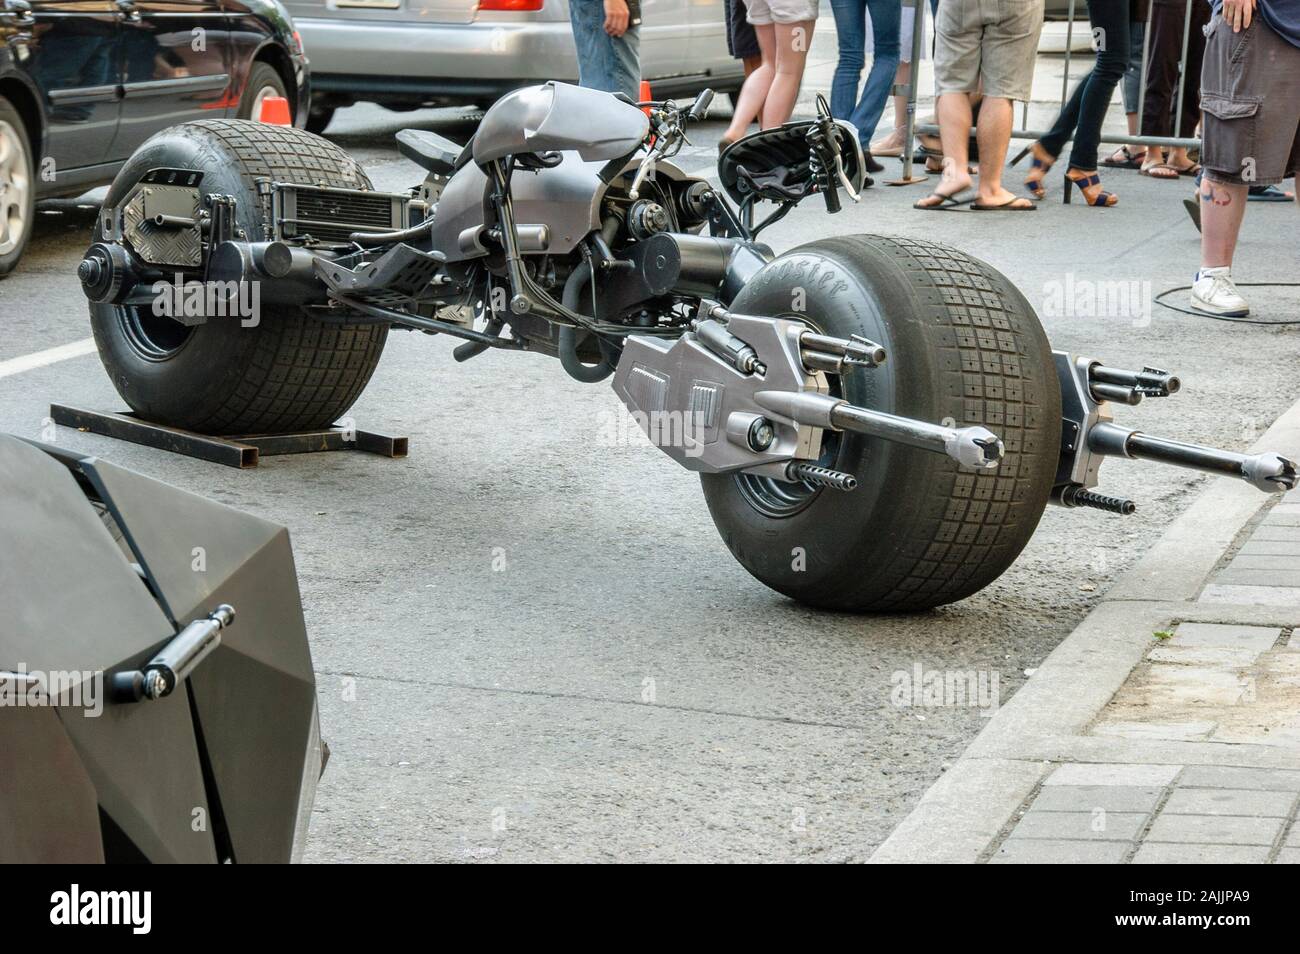 Moto Batpod utilisé dans la suite de Batman The Dark Knight, visiter la ville de Toronto pour une campagne de promotion. Banque D'Images